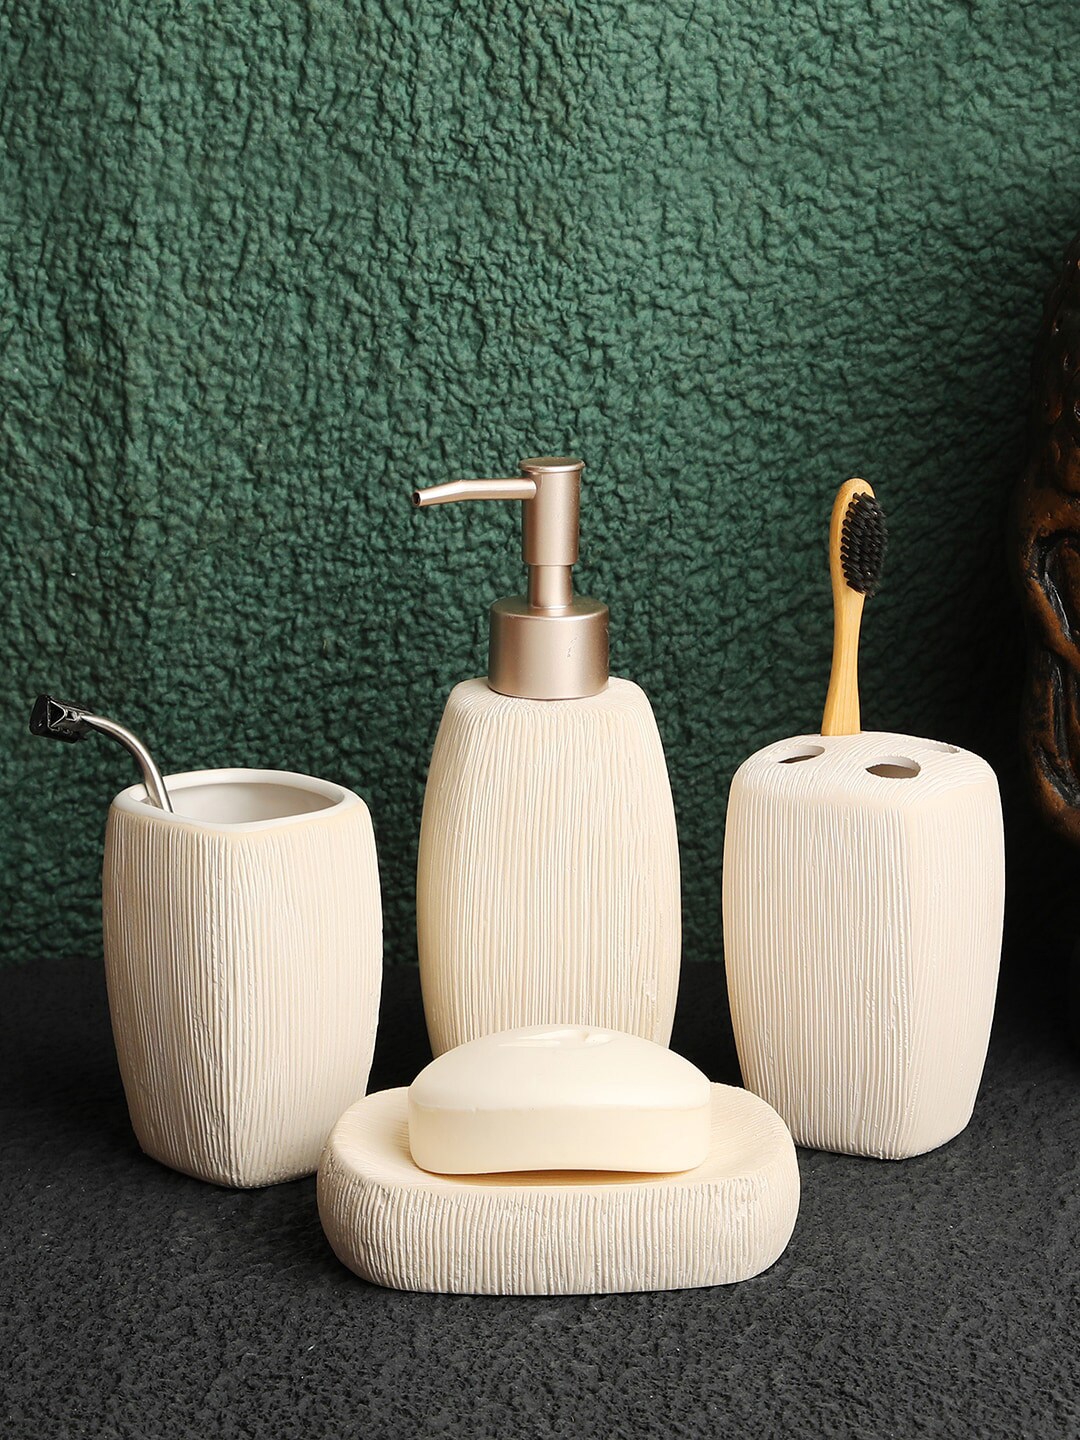 ROMEE Set of 4 Cream Textured Ceramic Bathroom Accessories Price in India